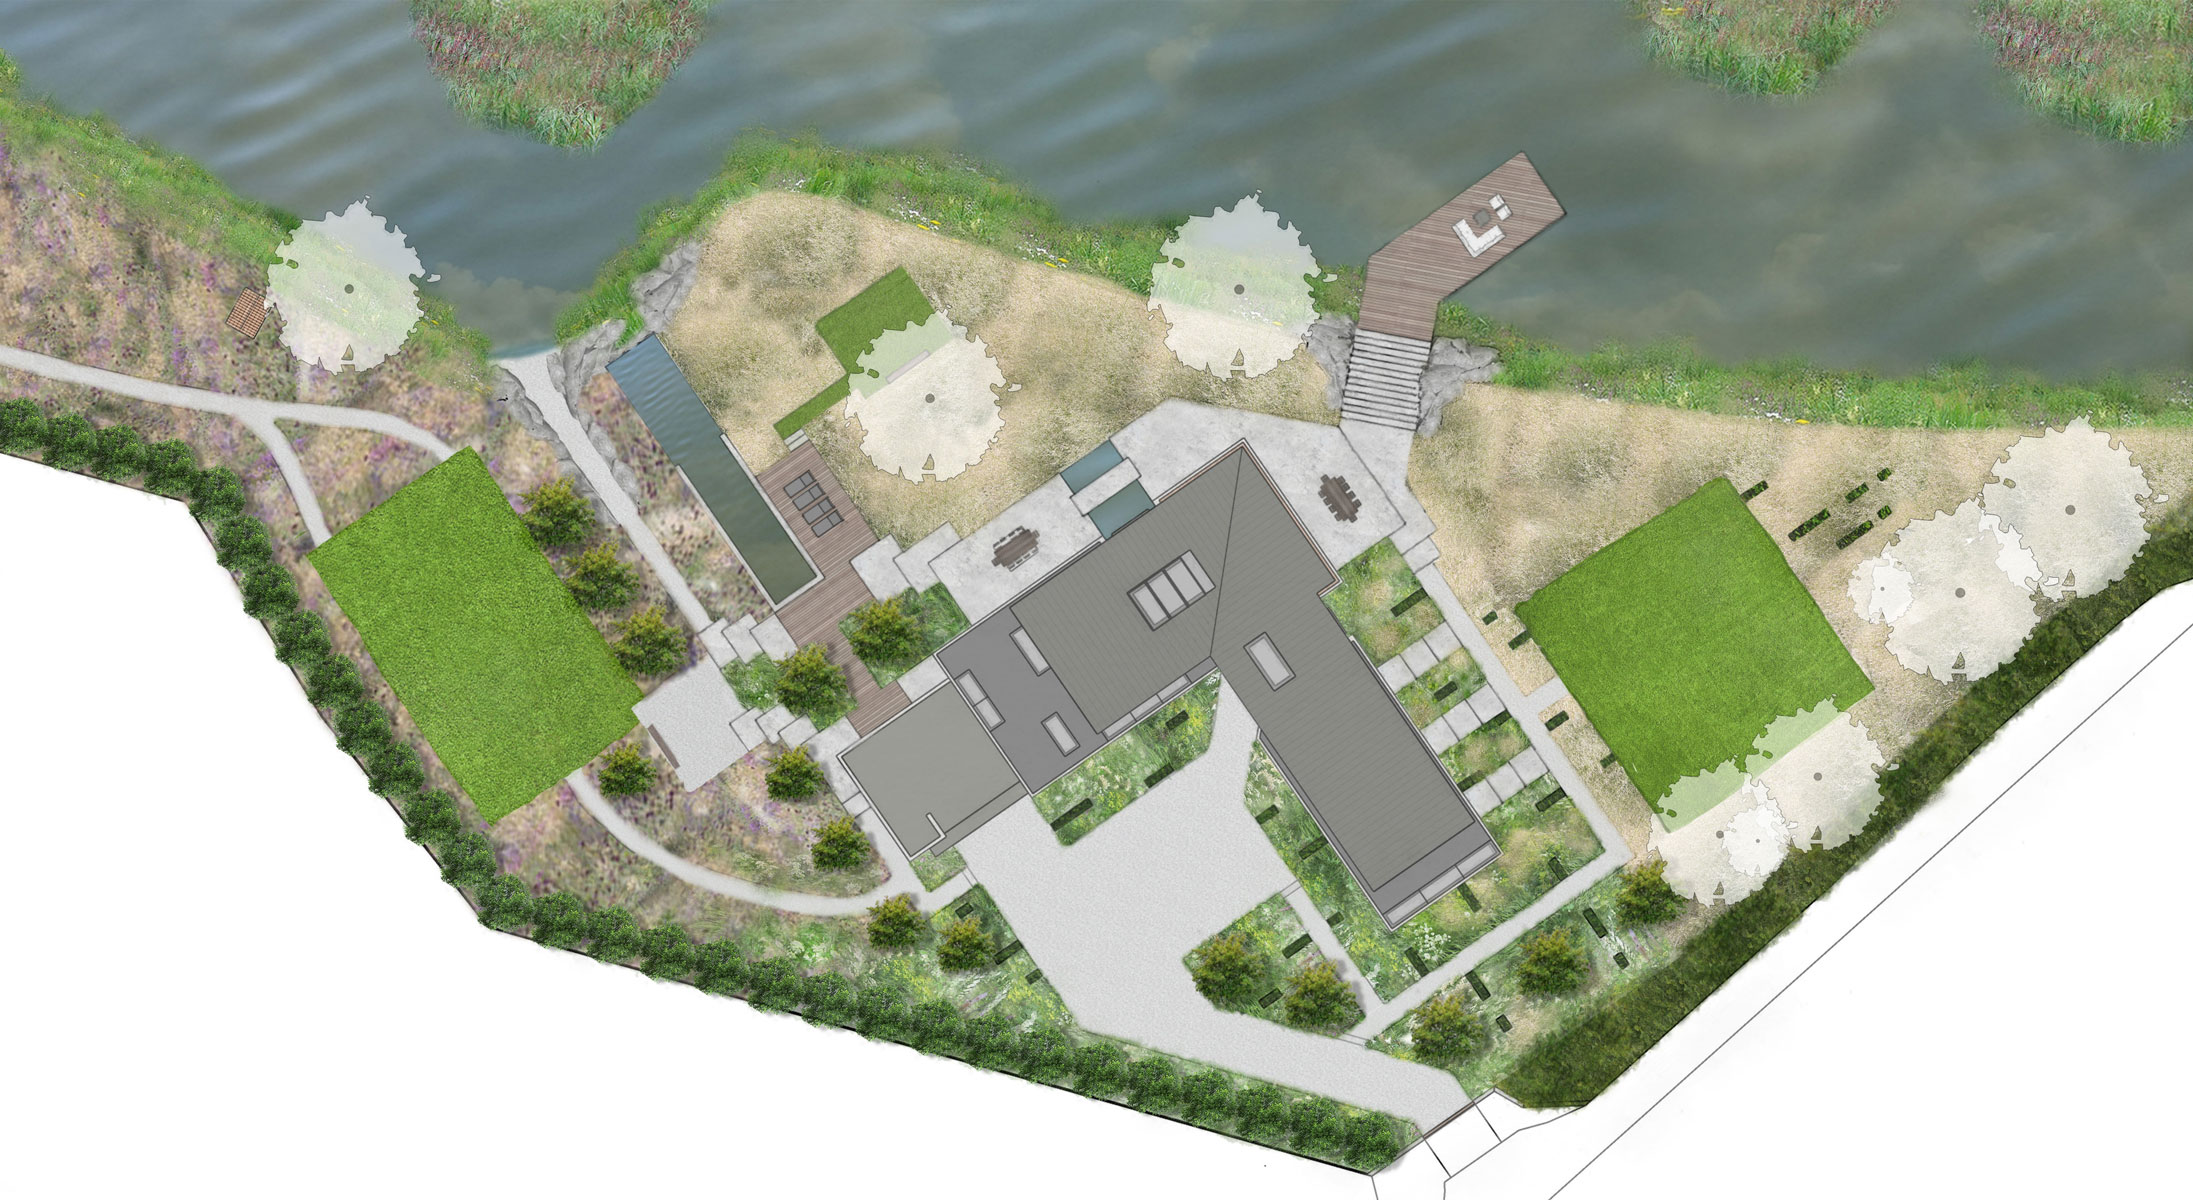 Colm Joseph Gardens - modern cambridgeshire landscape garden masterplan